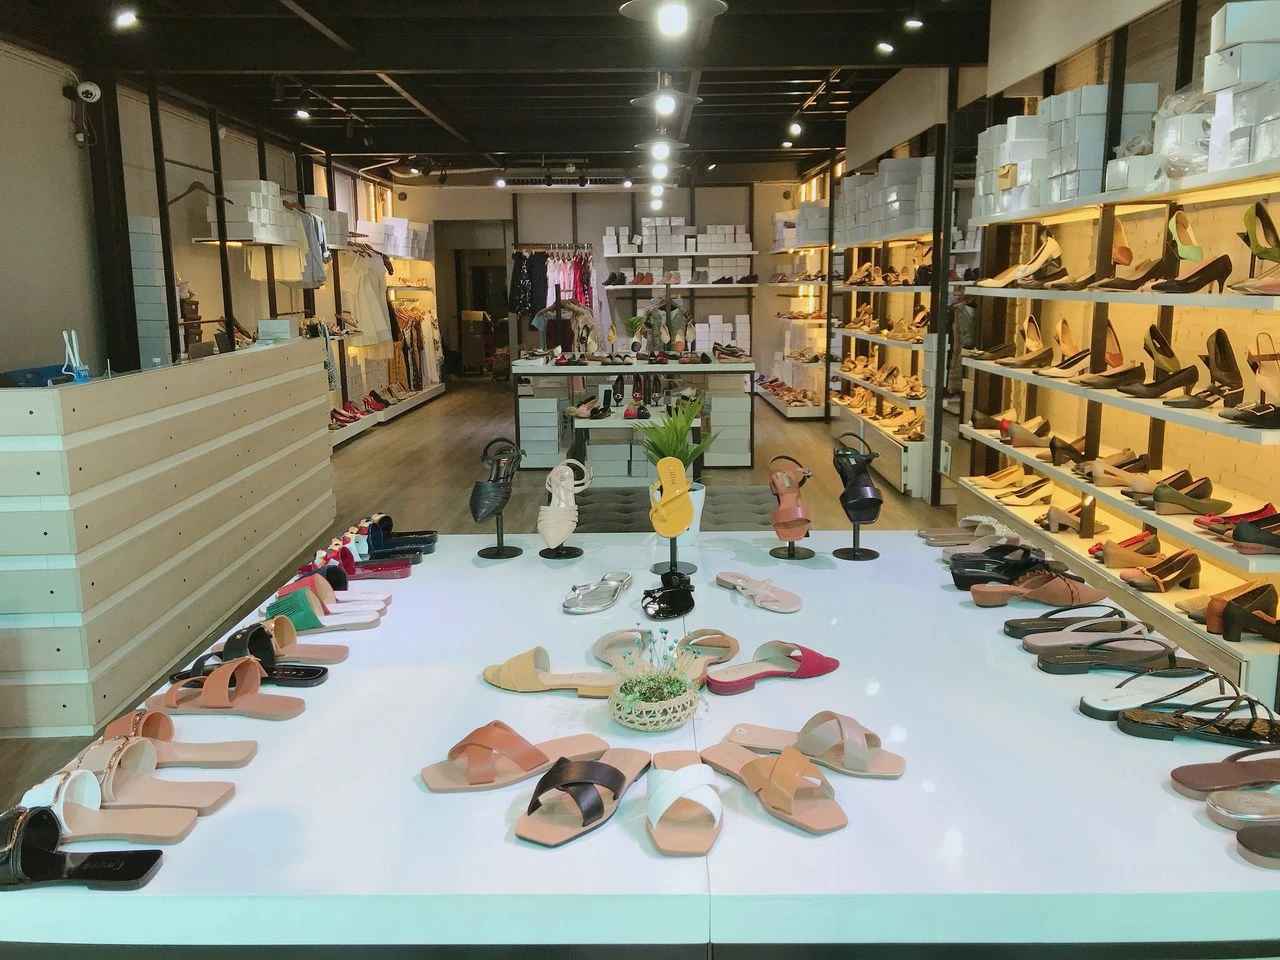 TOP 10 cửa hàng giày dép gần đây chất lượng tại TPHCM